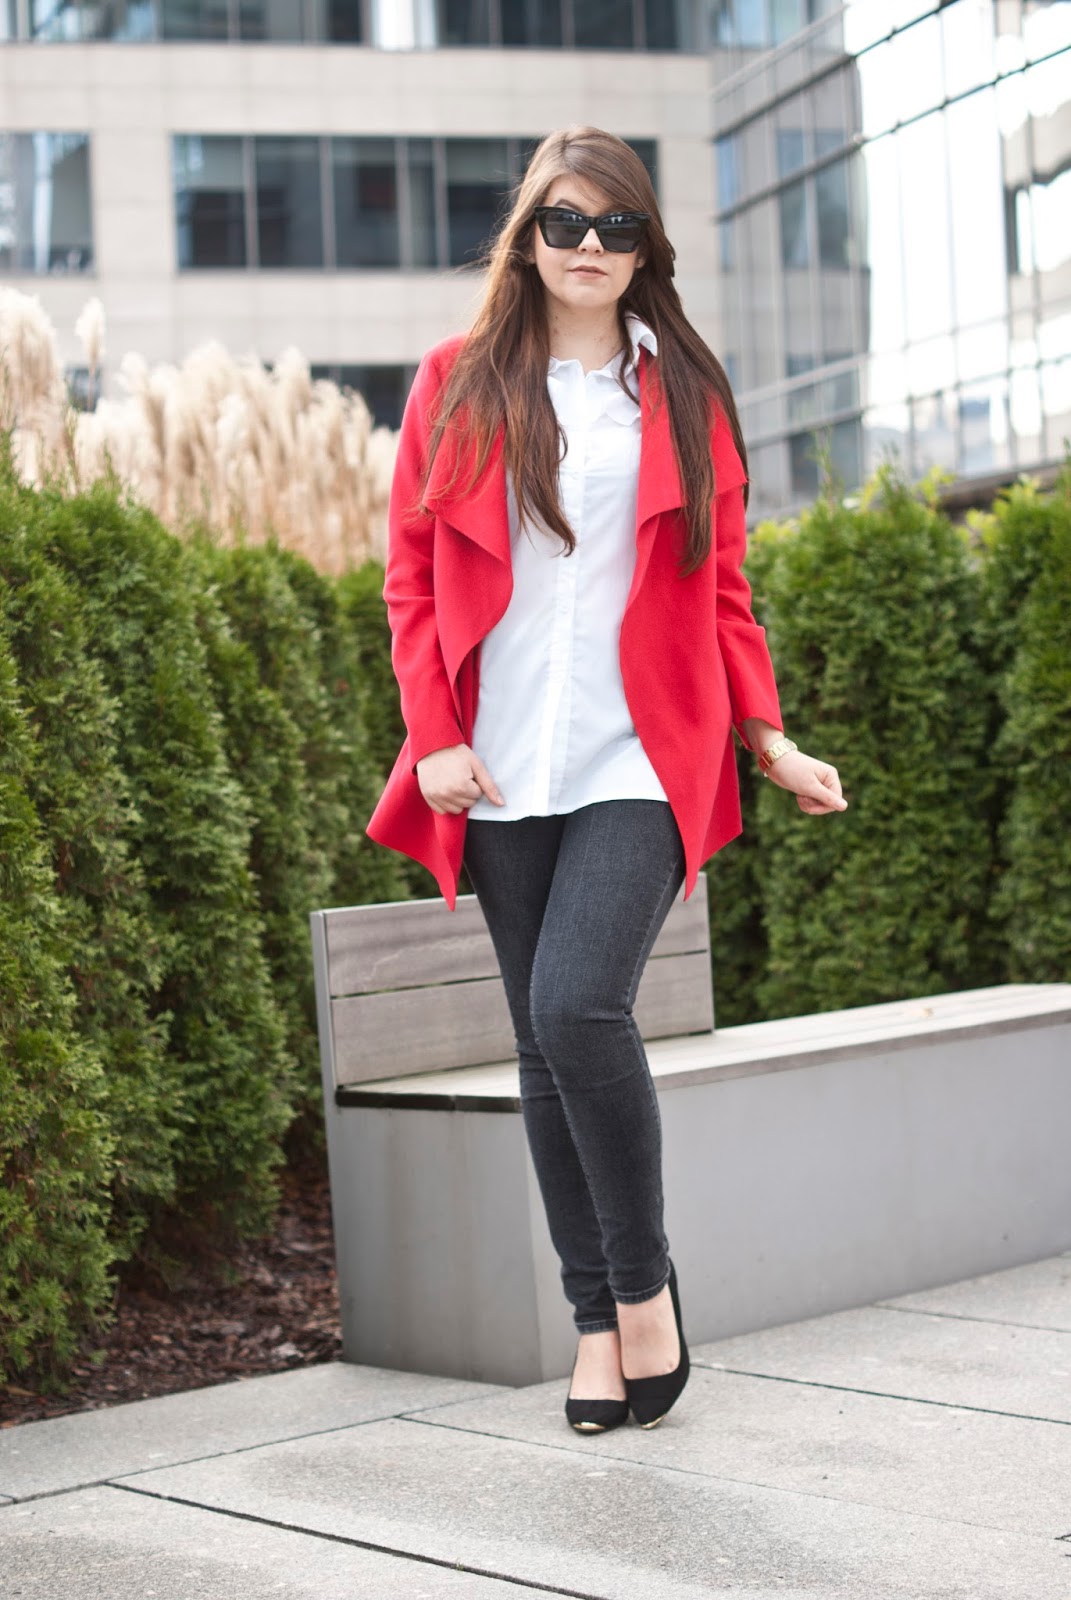 Czerwony płaszcz biała koszula / Red coat white shirt - Feather - Mój sposób na modę 